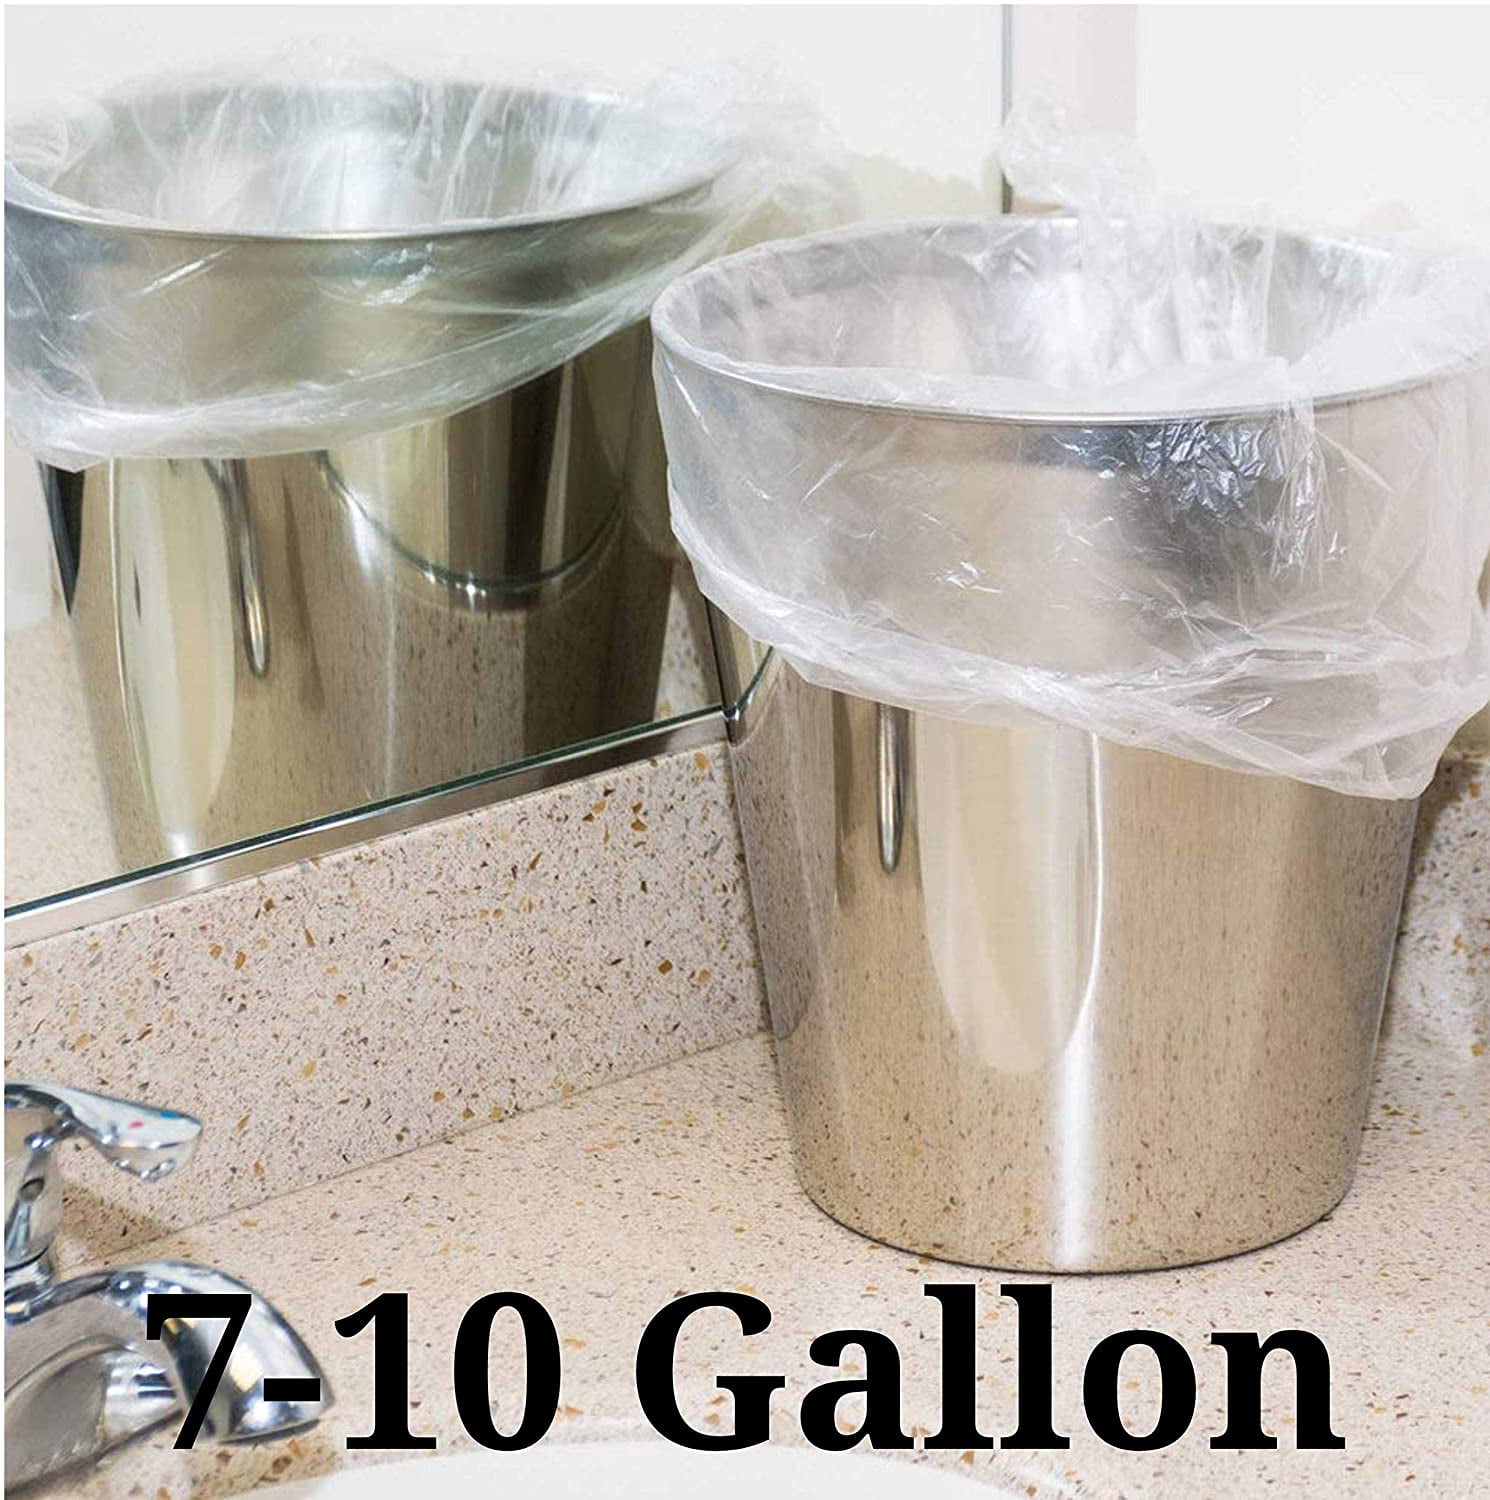 Perk™ 13 Gallon Scented Kitchen Trash Bag, 28 x 24, Low Density, 0.9 mil,  White, 100 Bags/Box (PK5